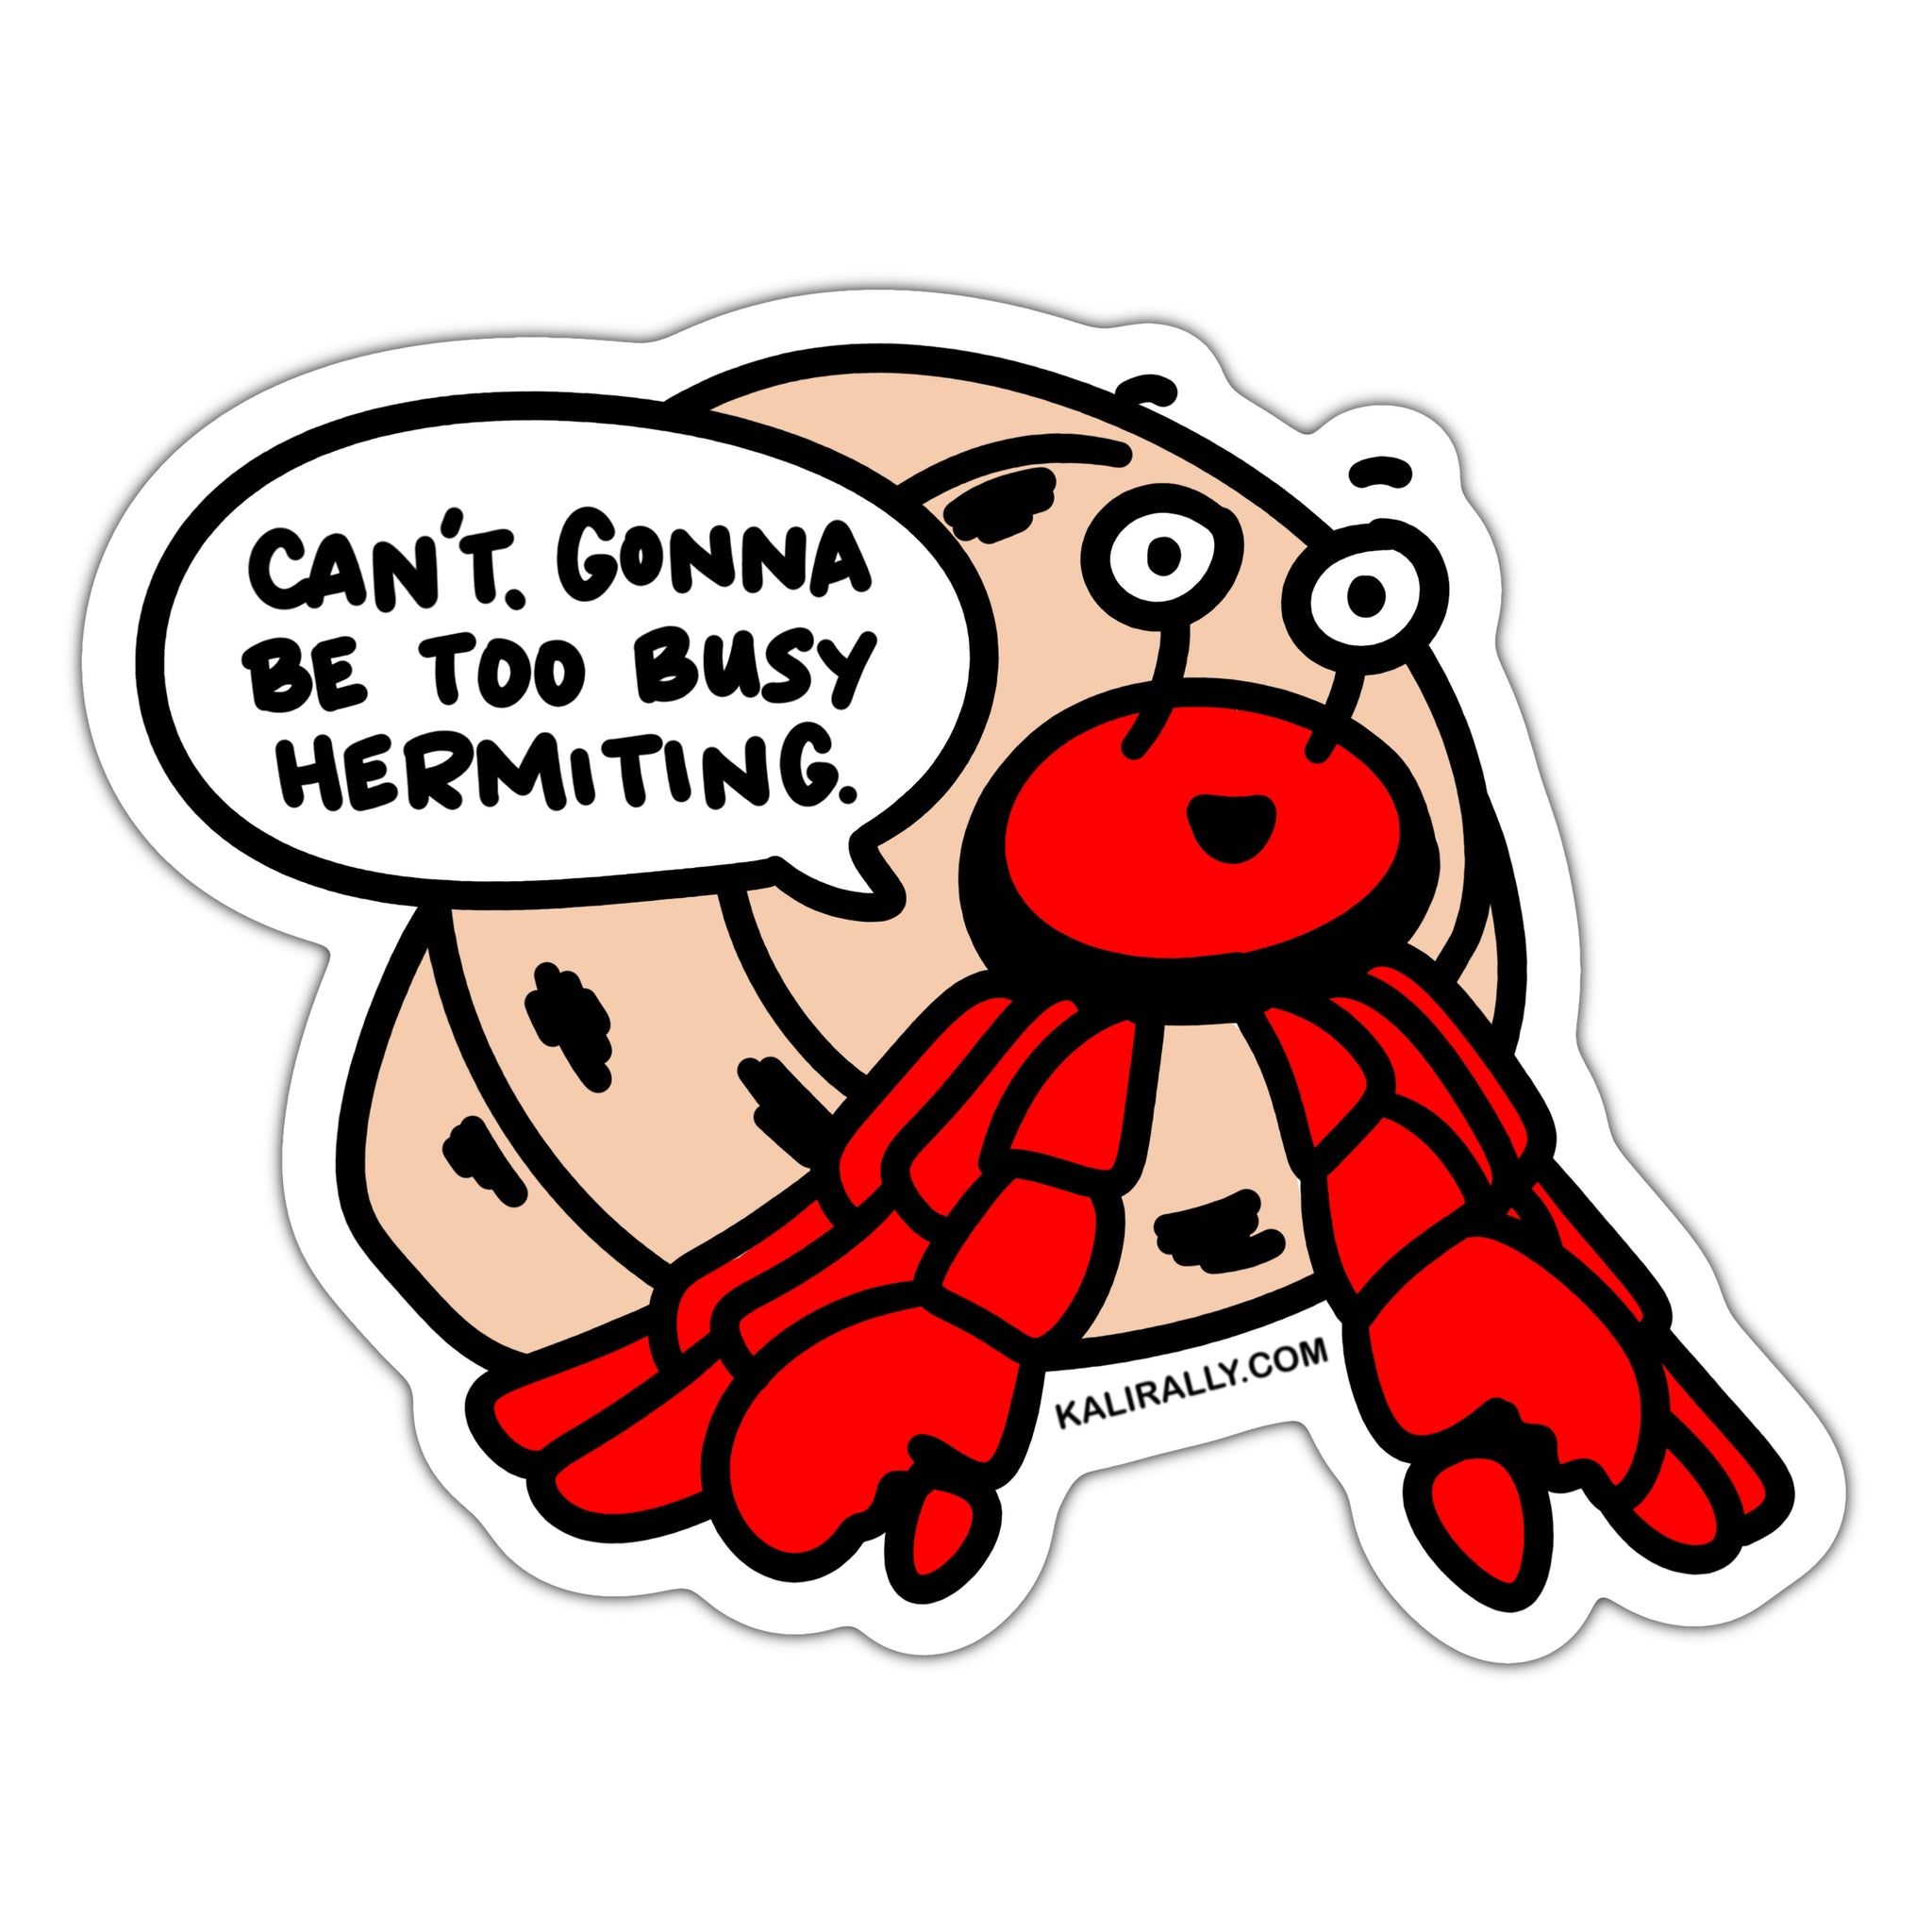 Funny introvert sticker, hermit crab sticker, too busy hermiting beach decal, waterproof vinyl sticker